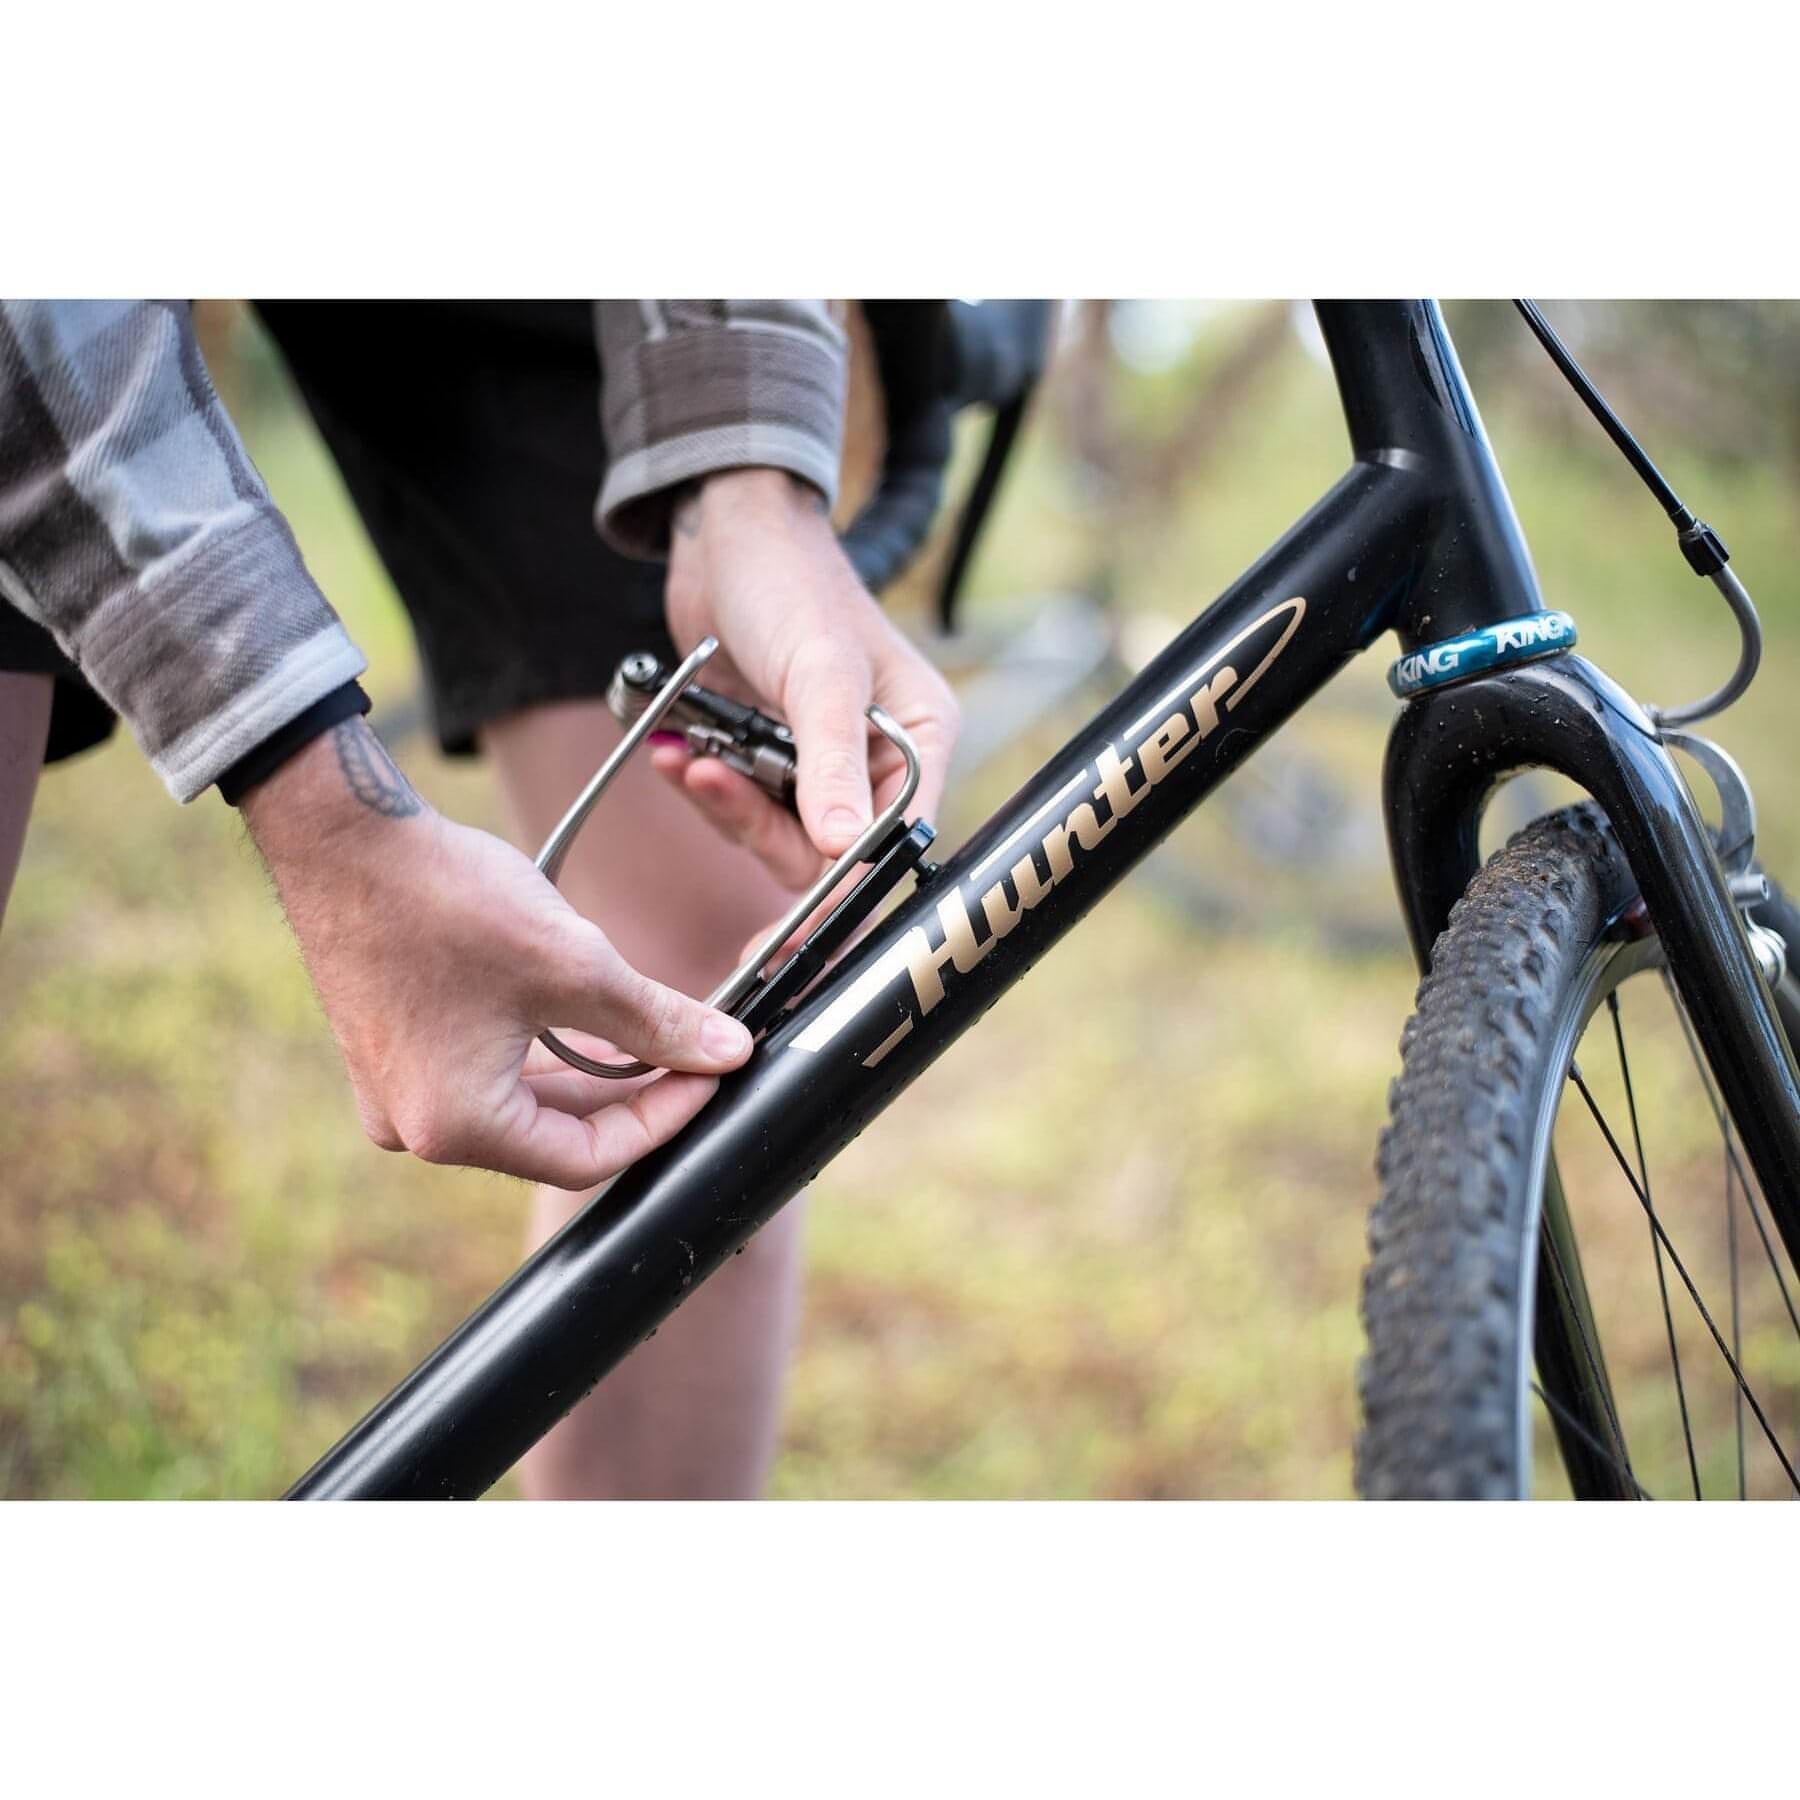 Knog Scout Bike Alarm Finder Kng12998 Details